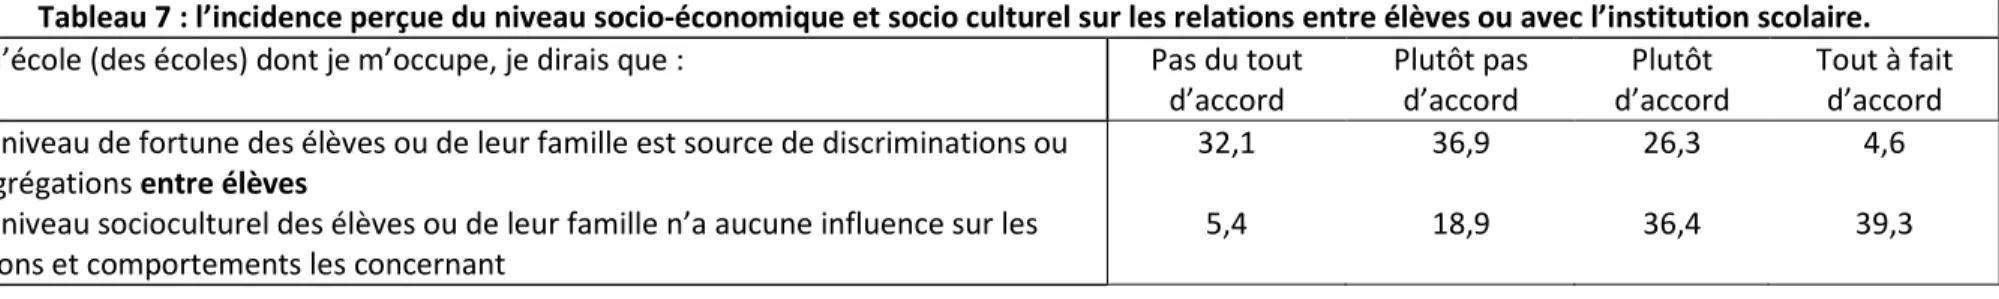 Tableau 7 : l’incidence perçue du niveau socio-économique et socio culturel sur les relations entre élèves ou avec l’institution scolaire